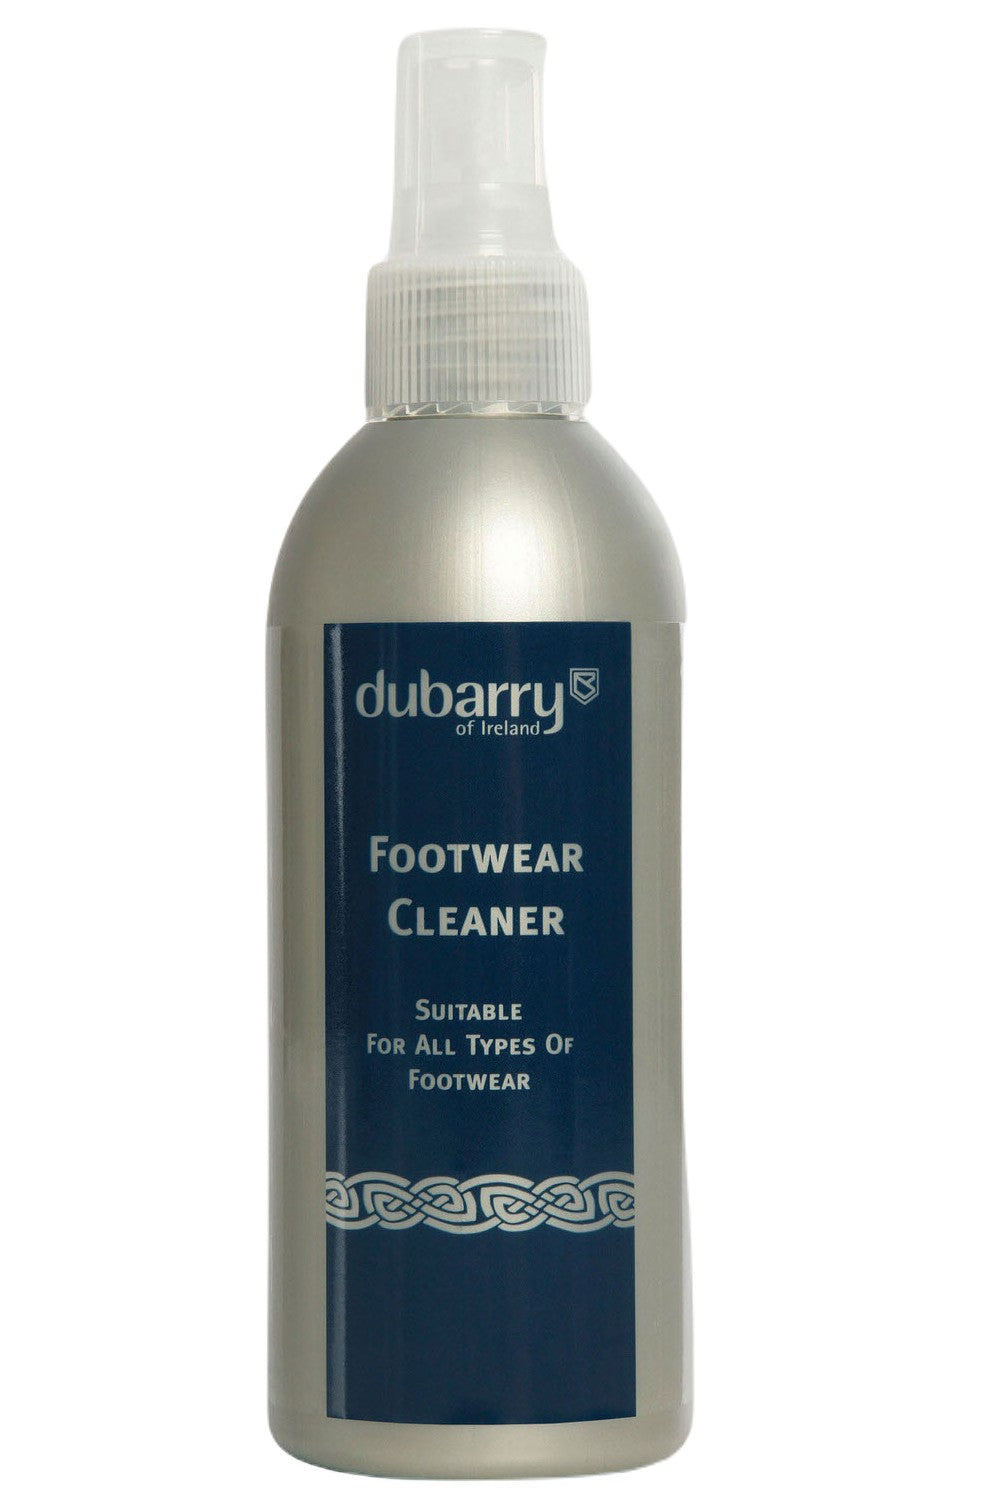 Dubarry Footwear Cleaner 150ml